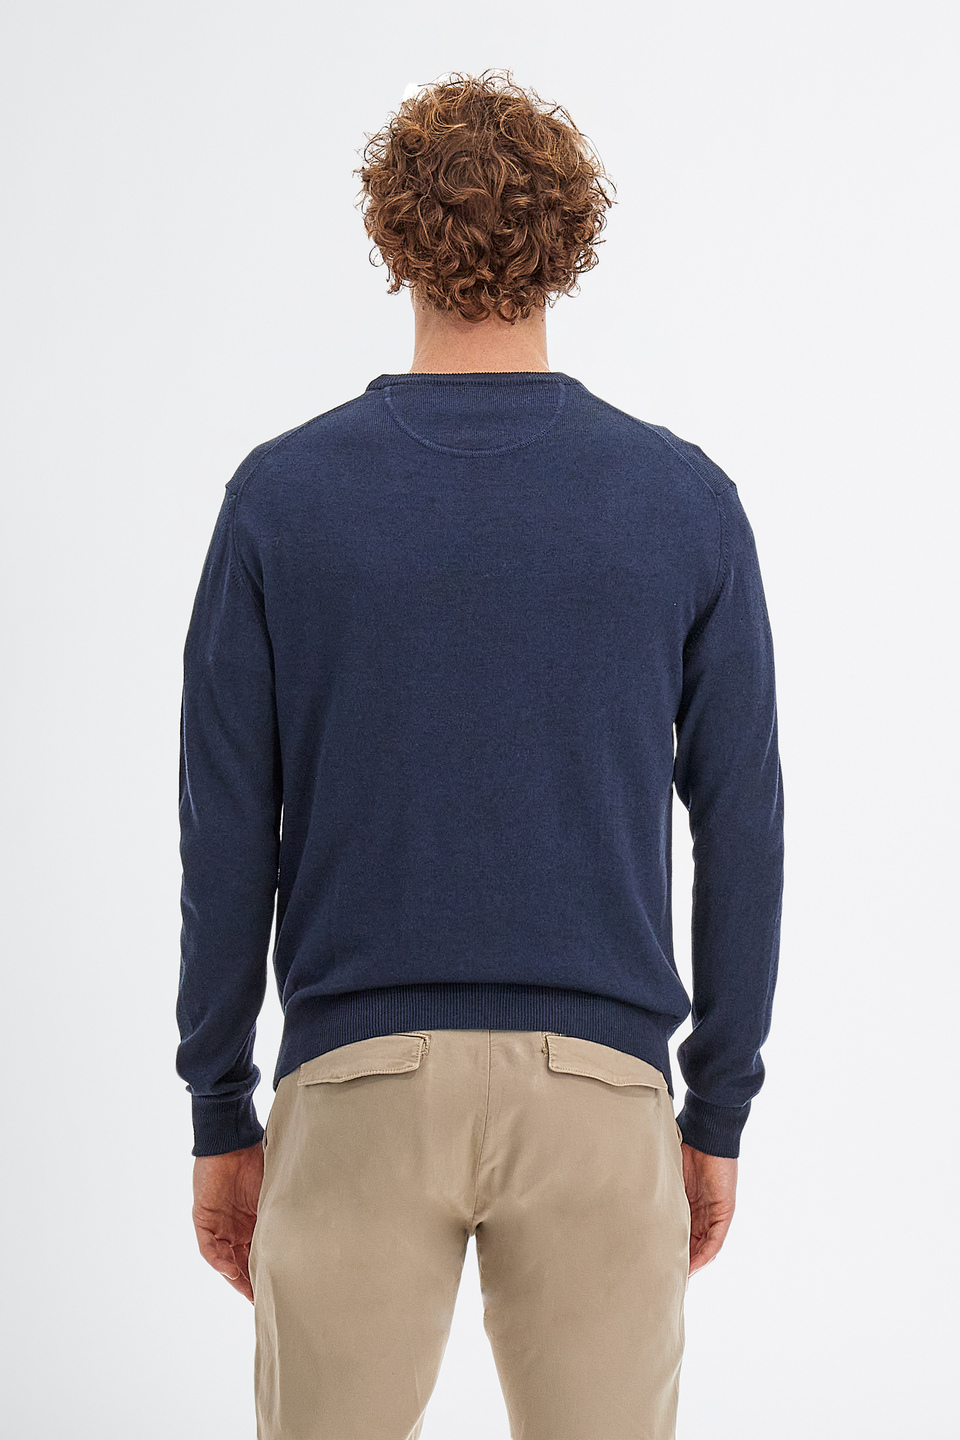 Maglia tricot da uomo a maniche lunghe in cotone misto lana regular fit | La Martina - Official Online Shop